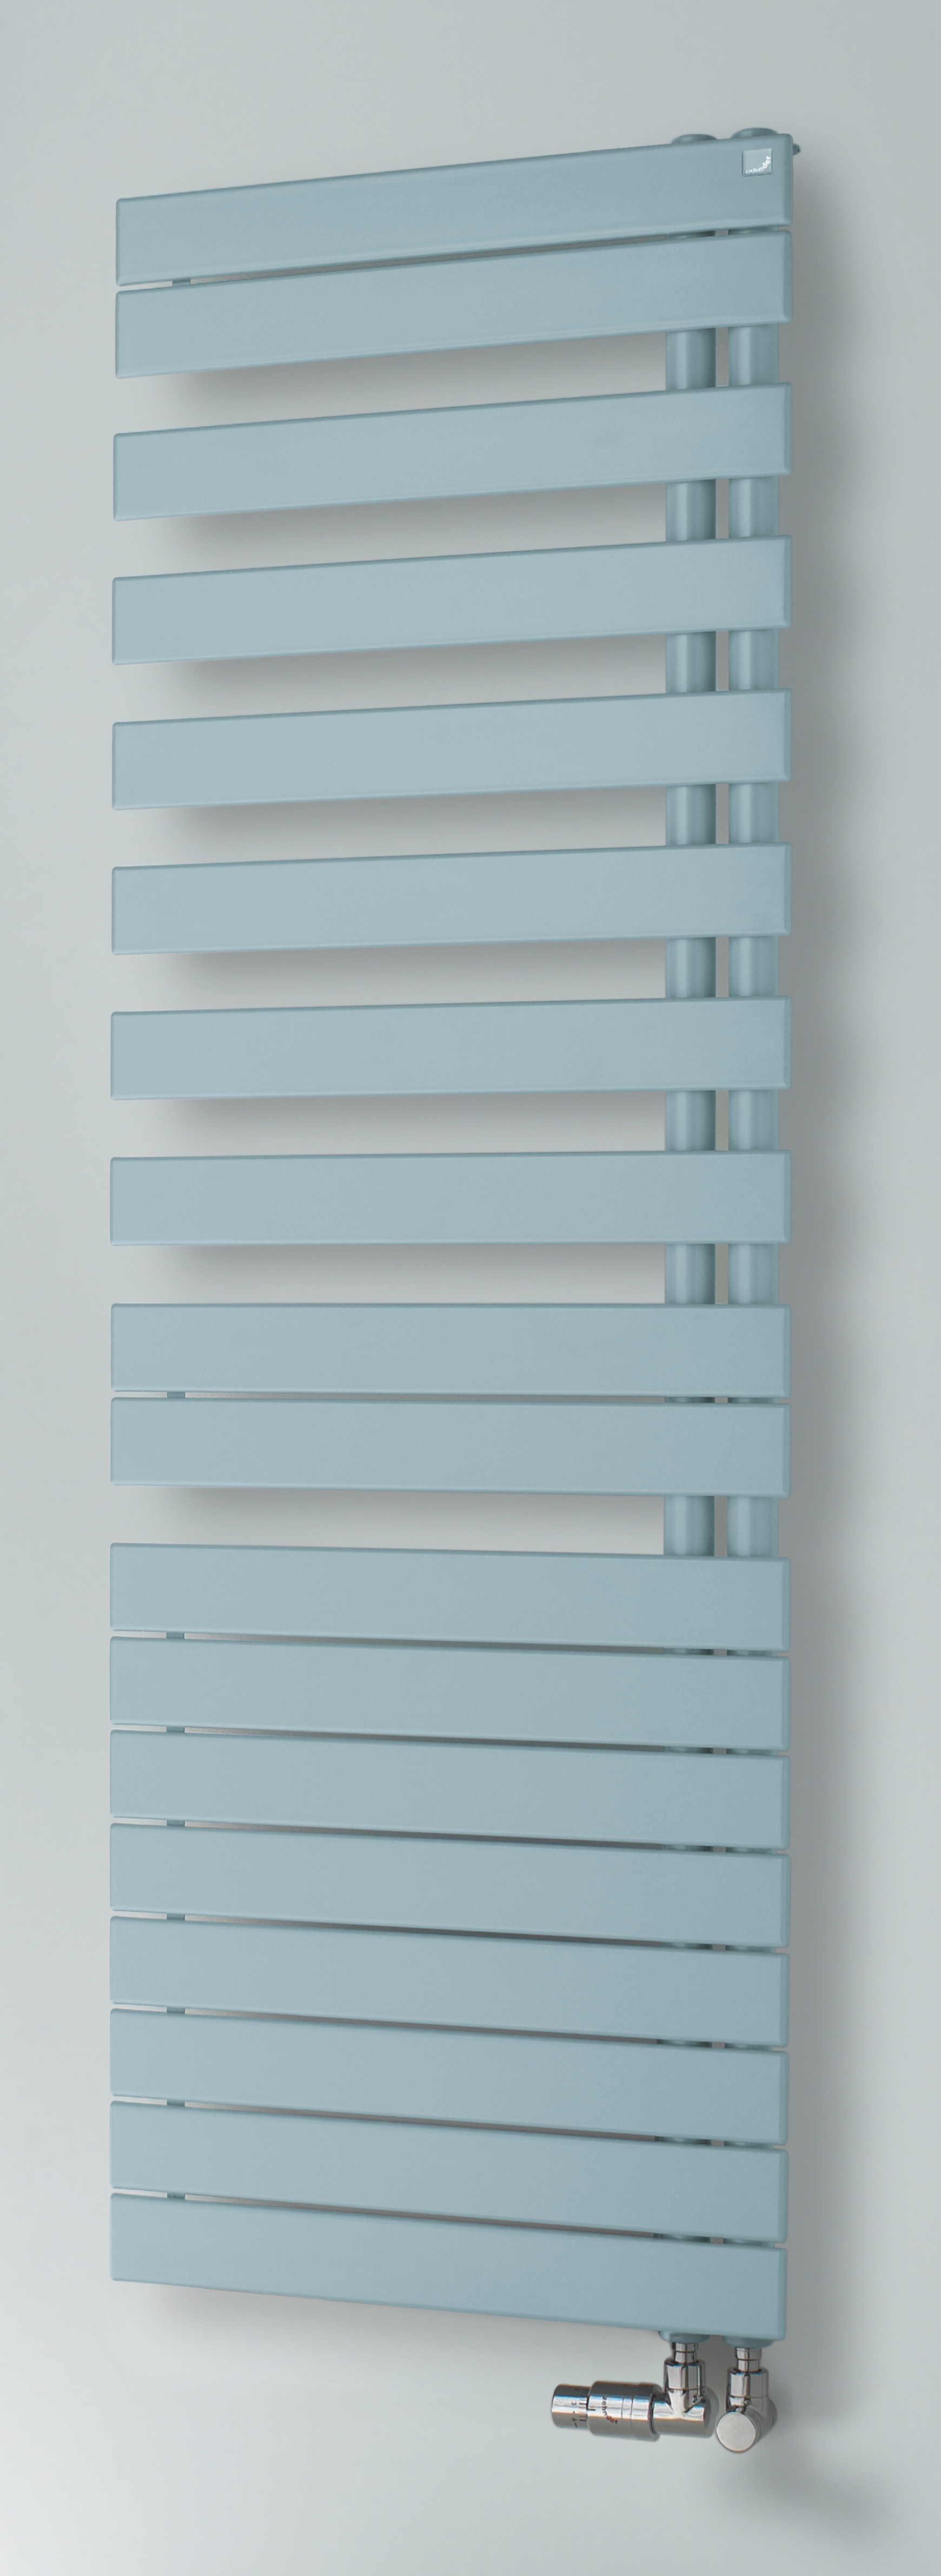 Zehnder Design-Heizkörper „Roda Spa Asym“ für Warmwasser-Zentralheizung mit 50 mm-Seitenanschluss 55 × 118,3 cm in Verkehrsweiß (RAL 9016, glänzend)